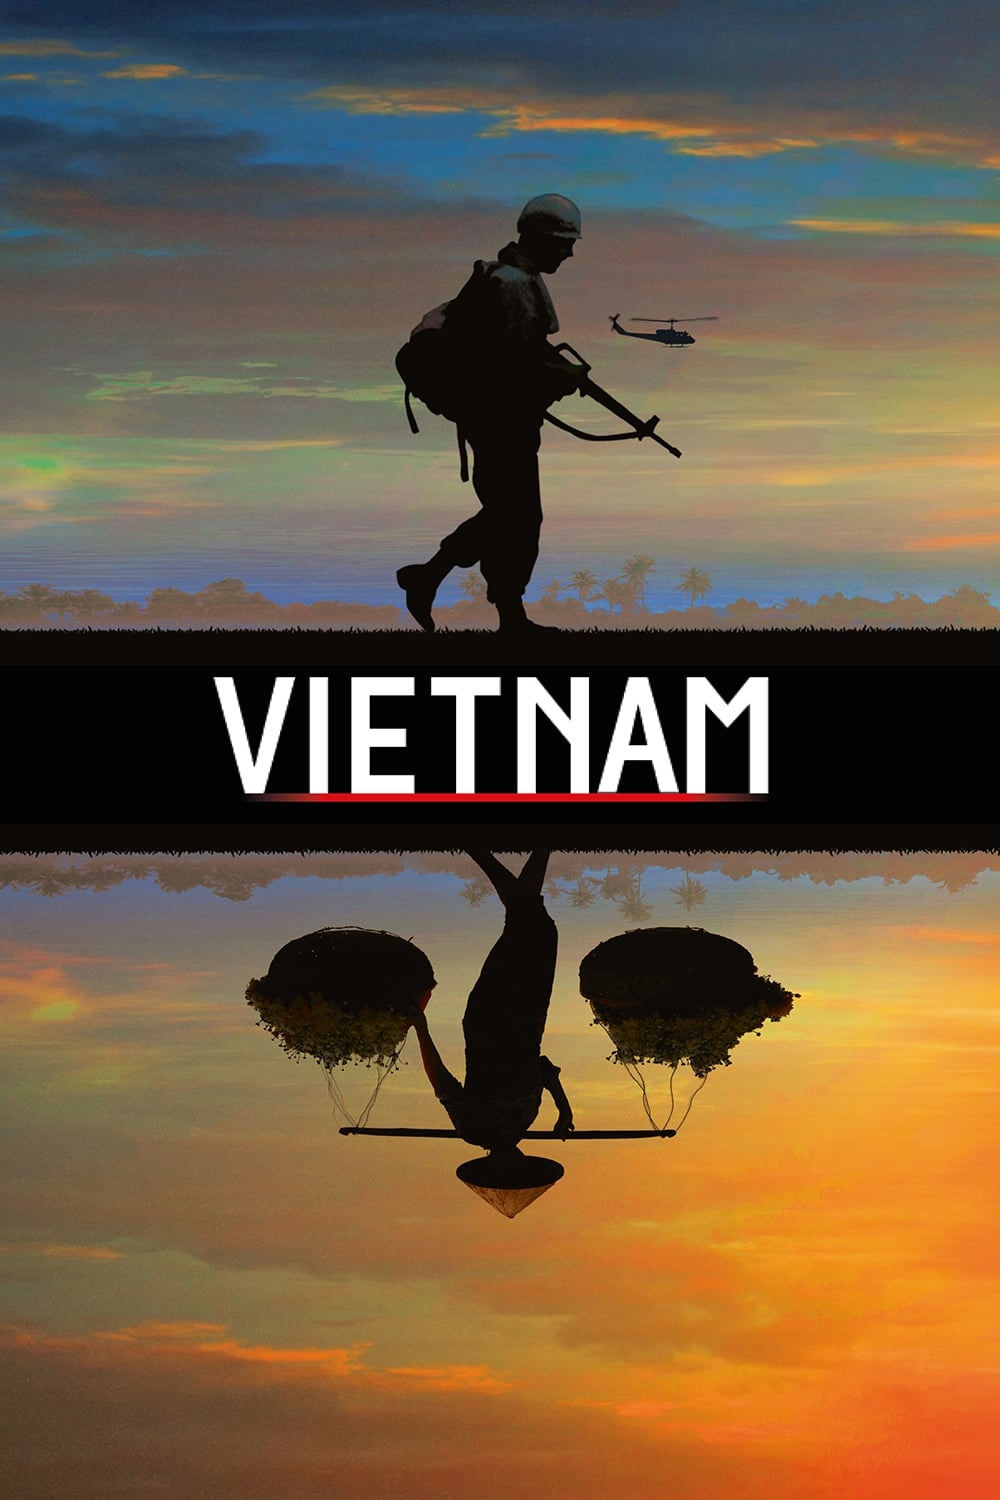 Les saisons de Vietnam sont-elles disponibles sur Netflix ou autre ?